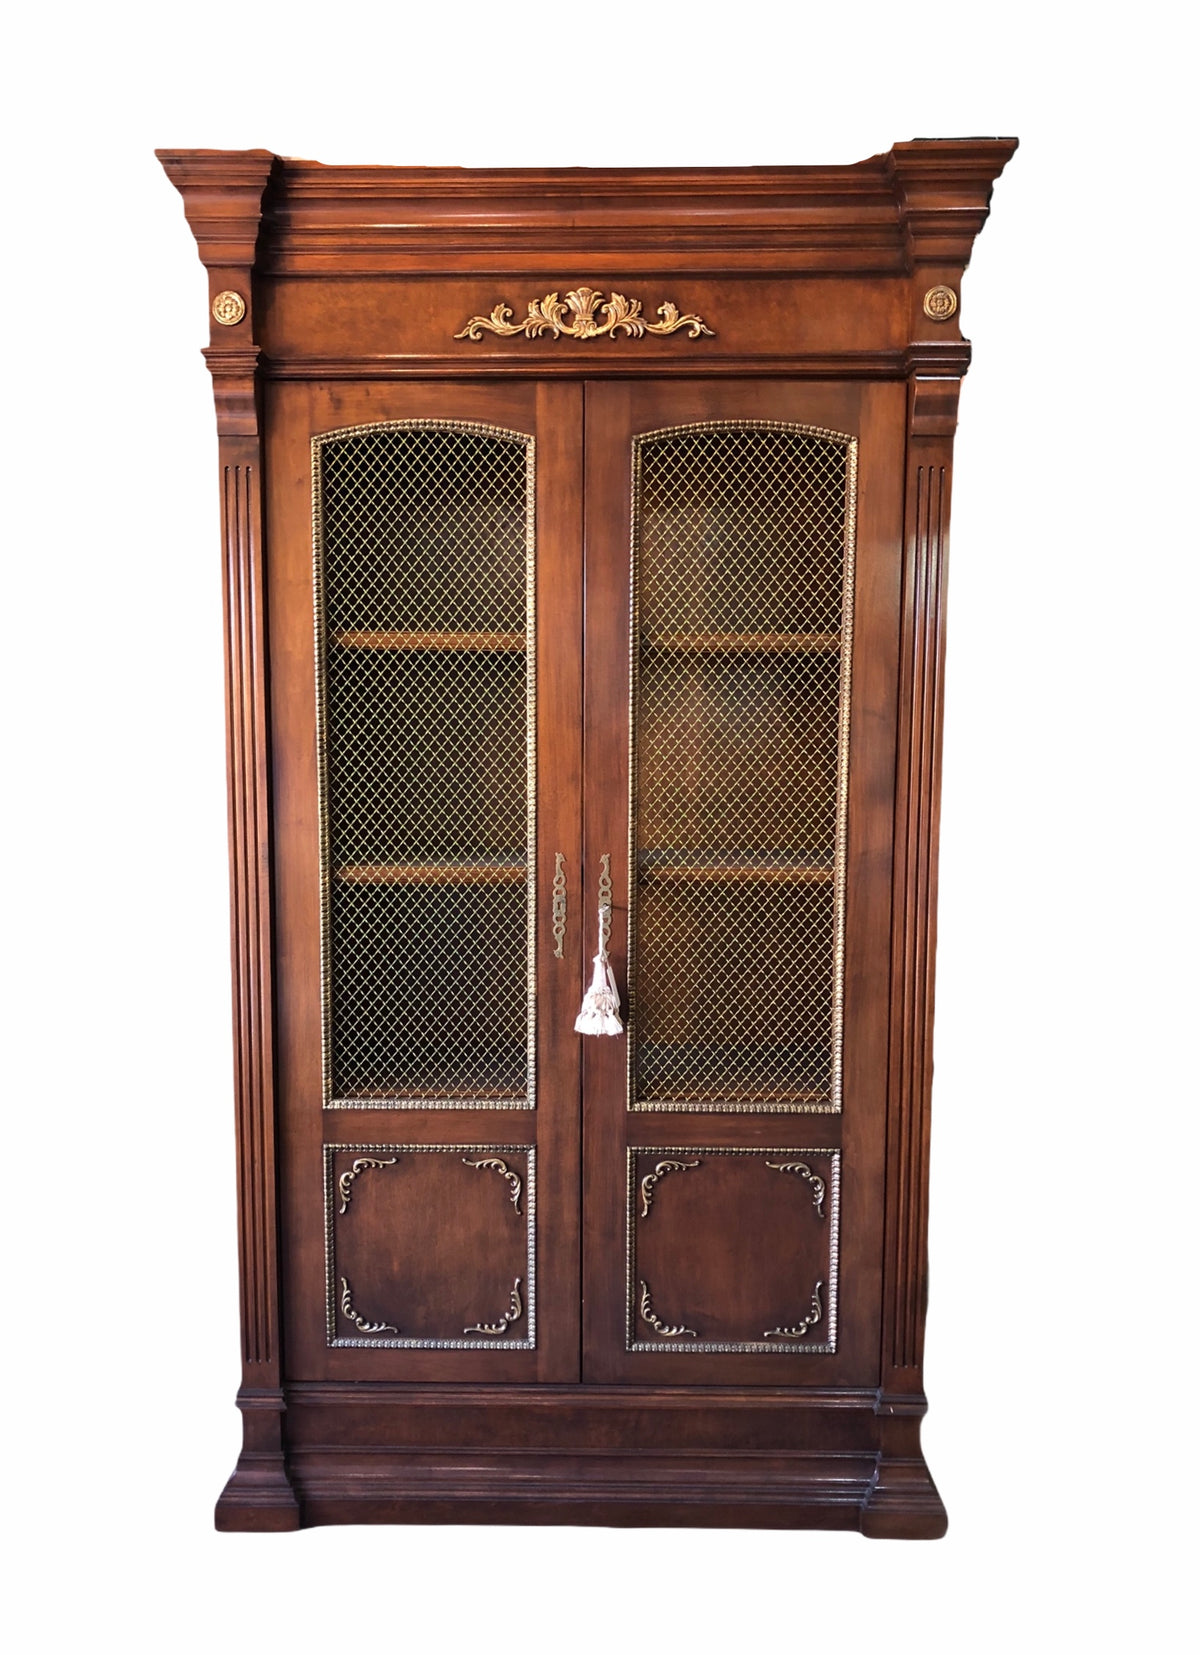 Regency Style Cabinet